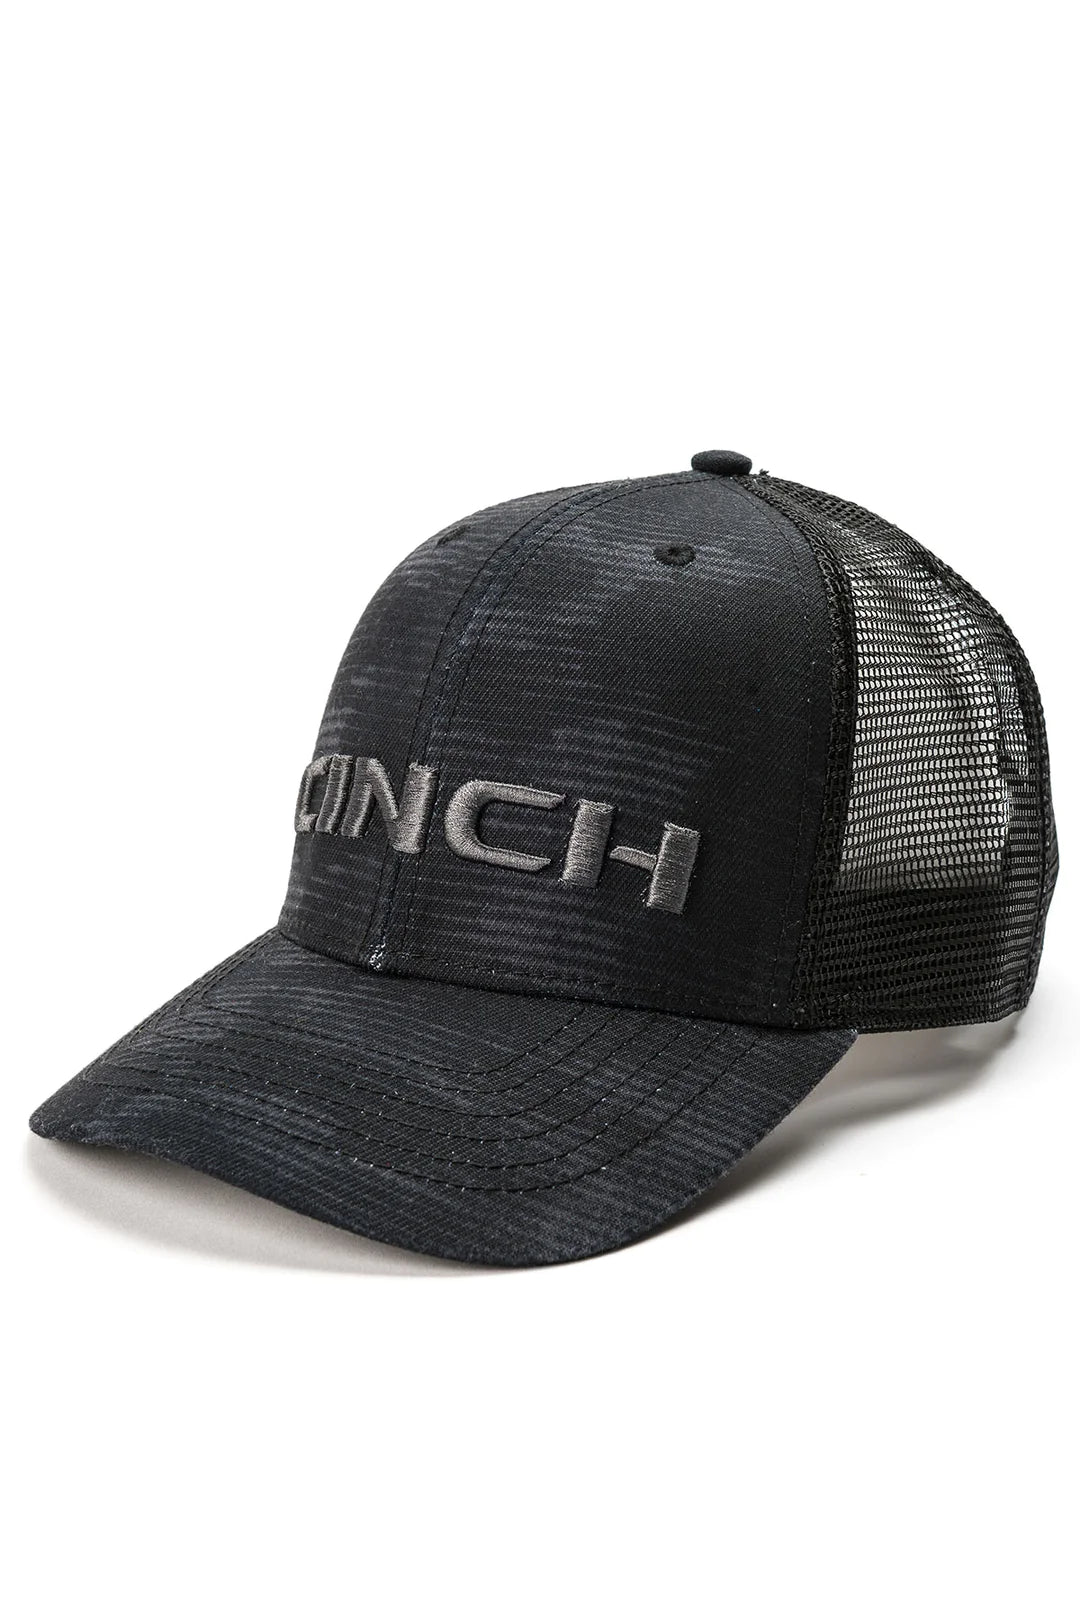 CINCH - Trucker Cap Blk